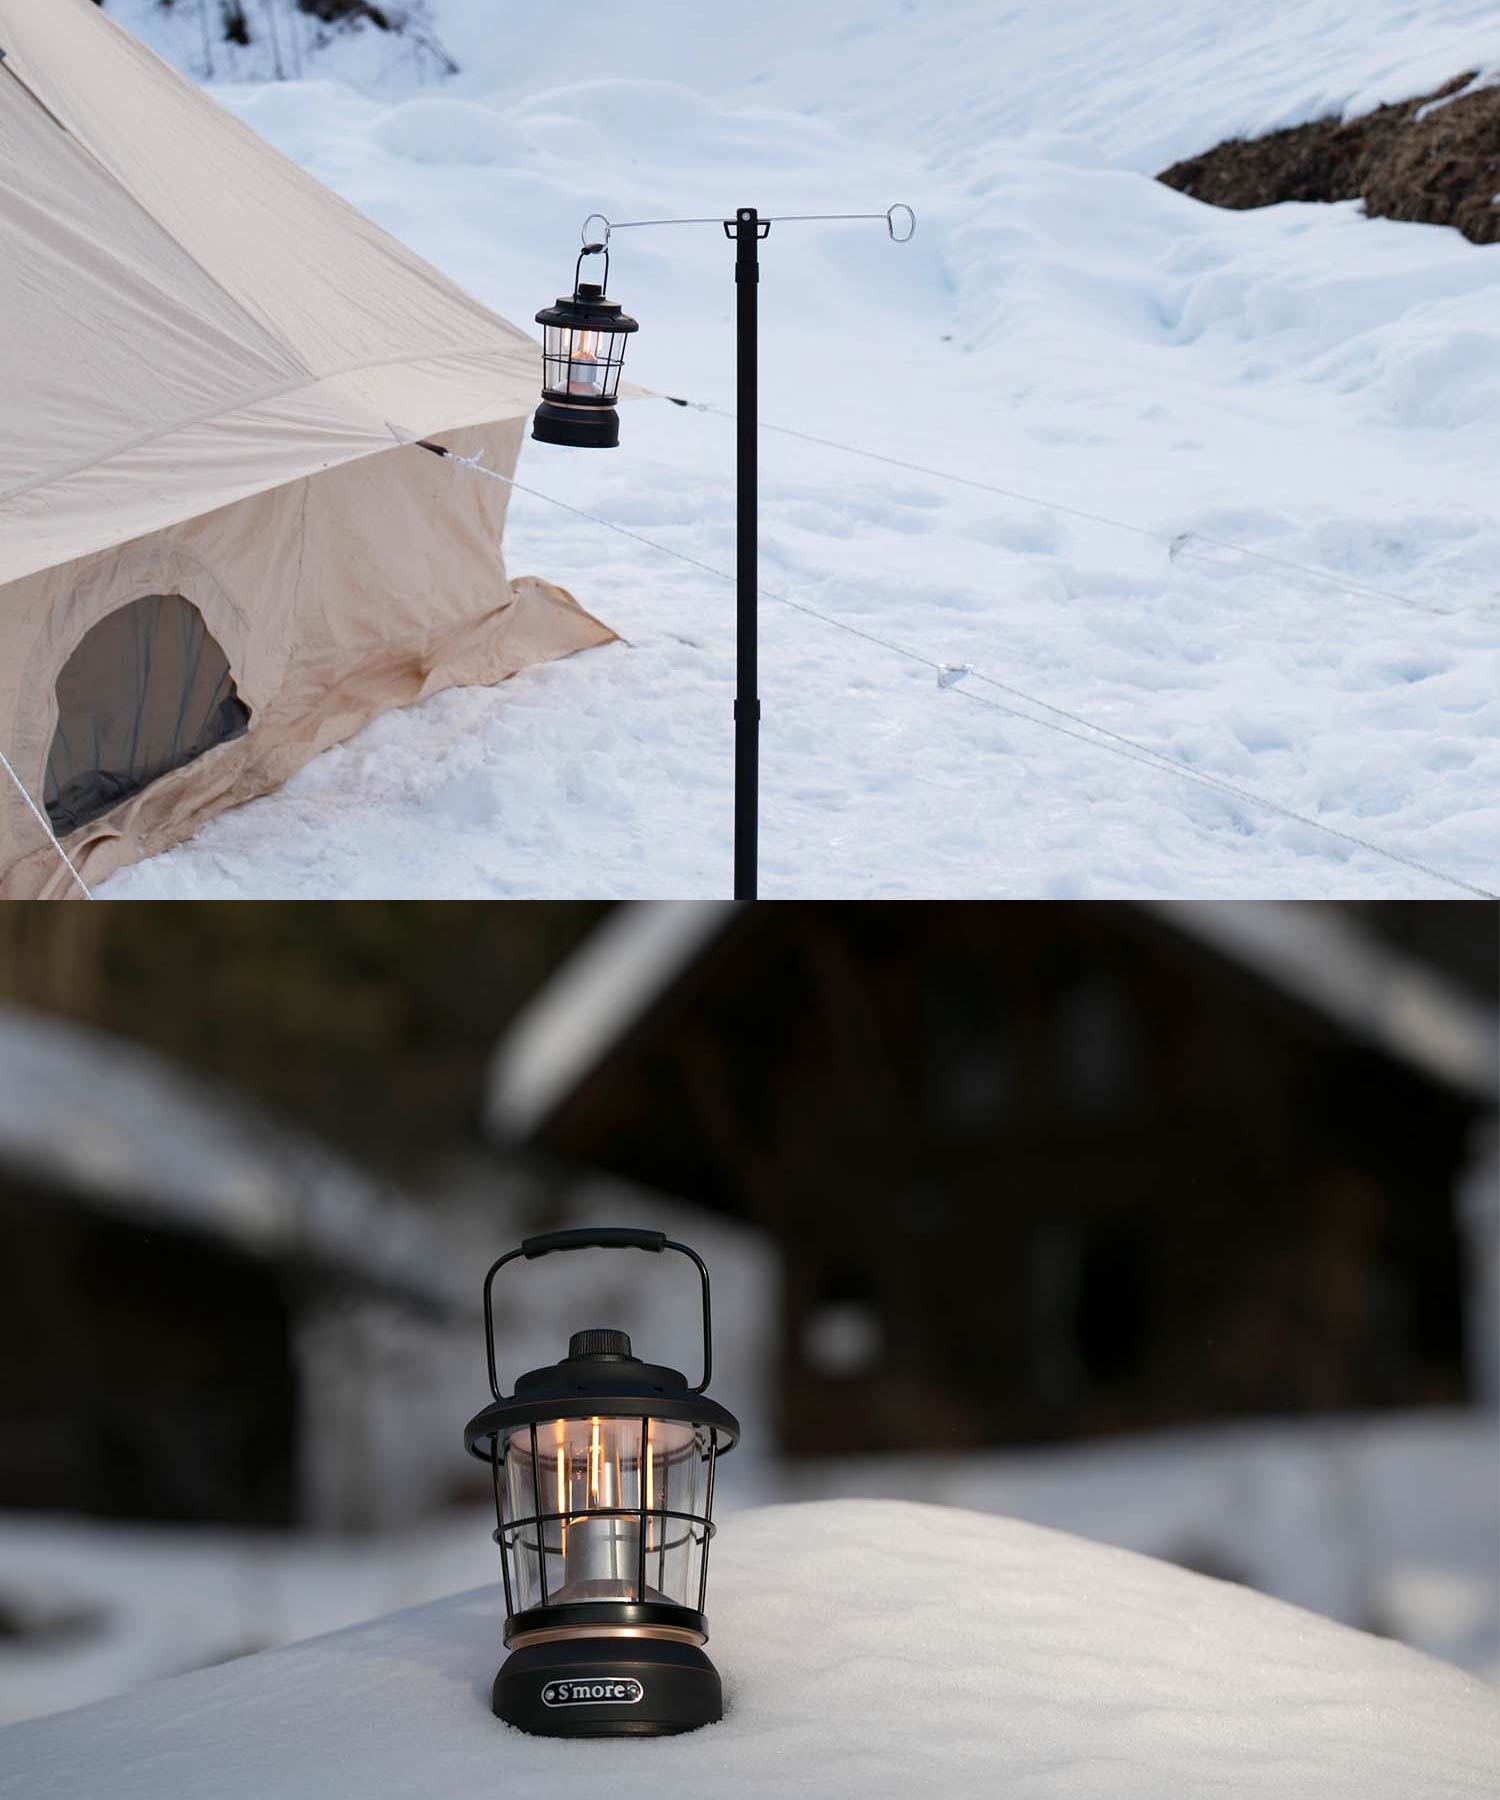 LEDライト ガーランド ランタン アウトドア キャンプ テント おしゃれ